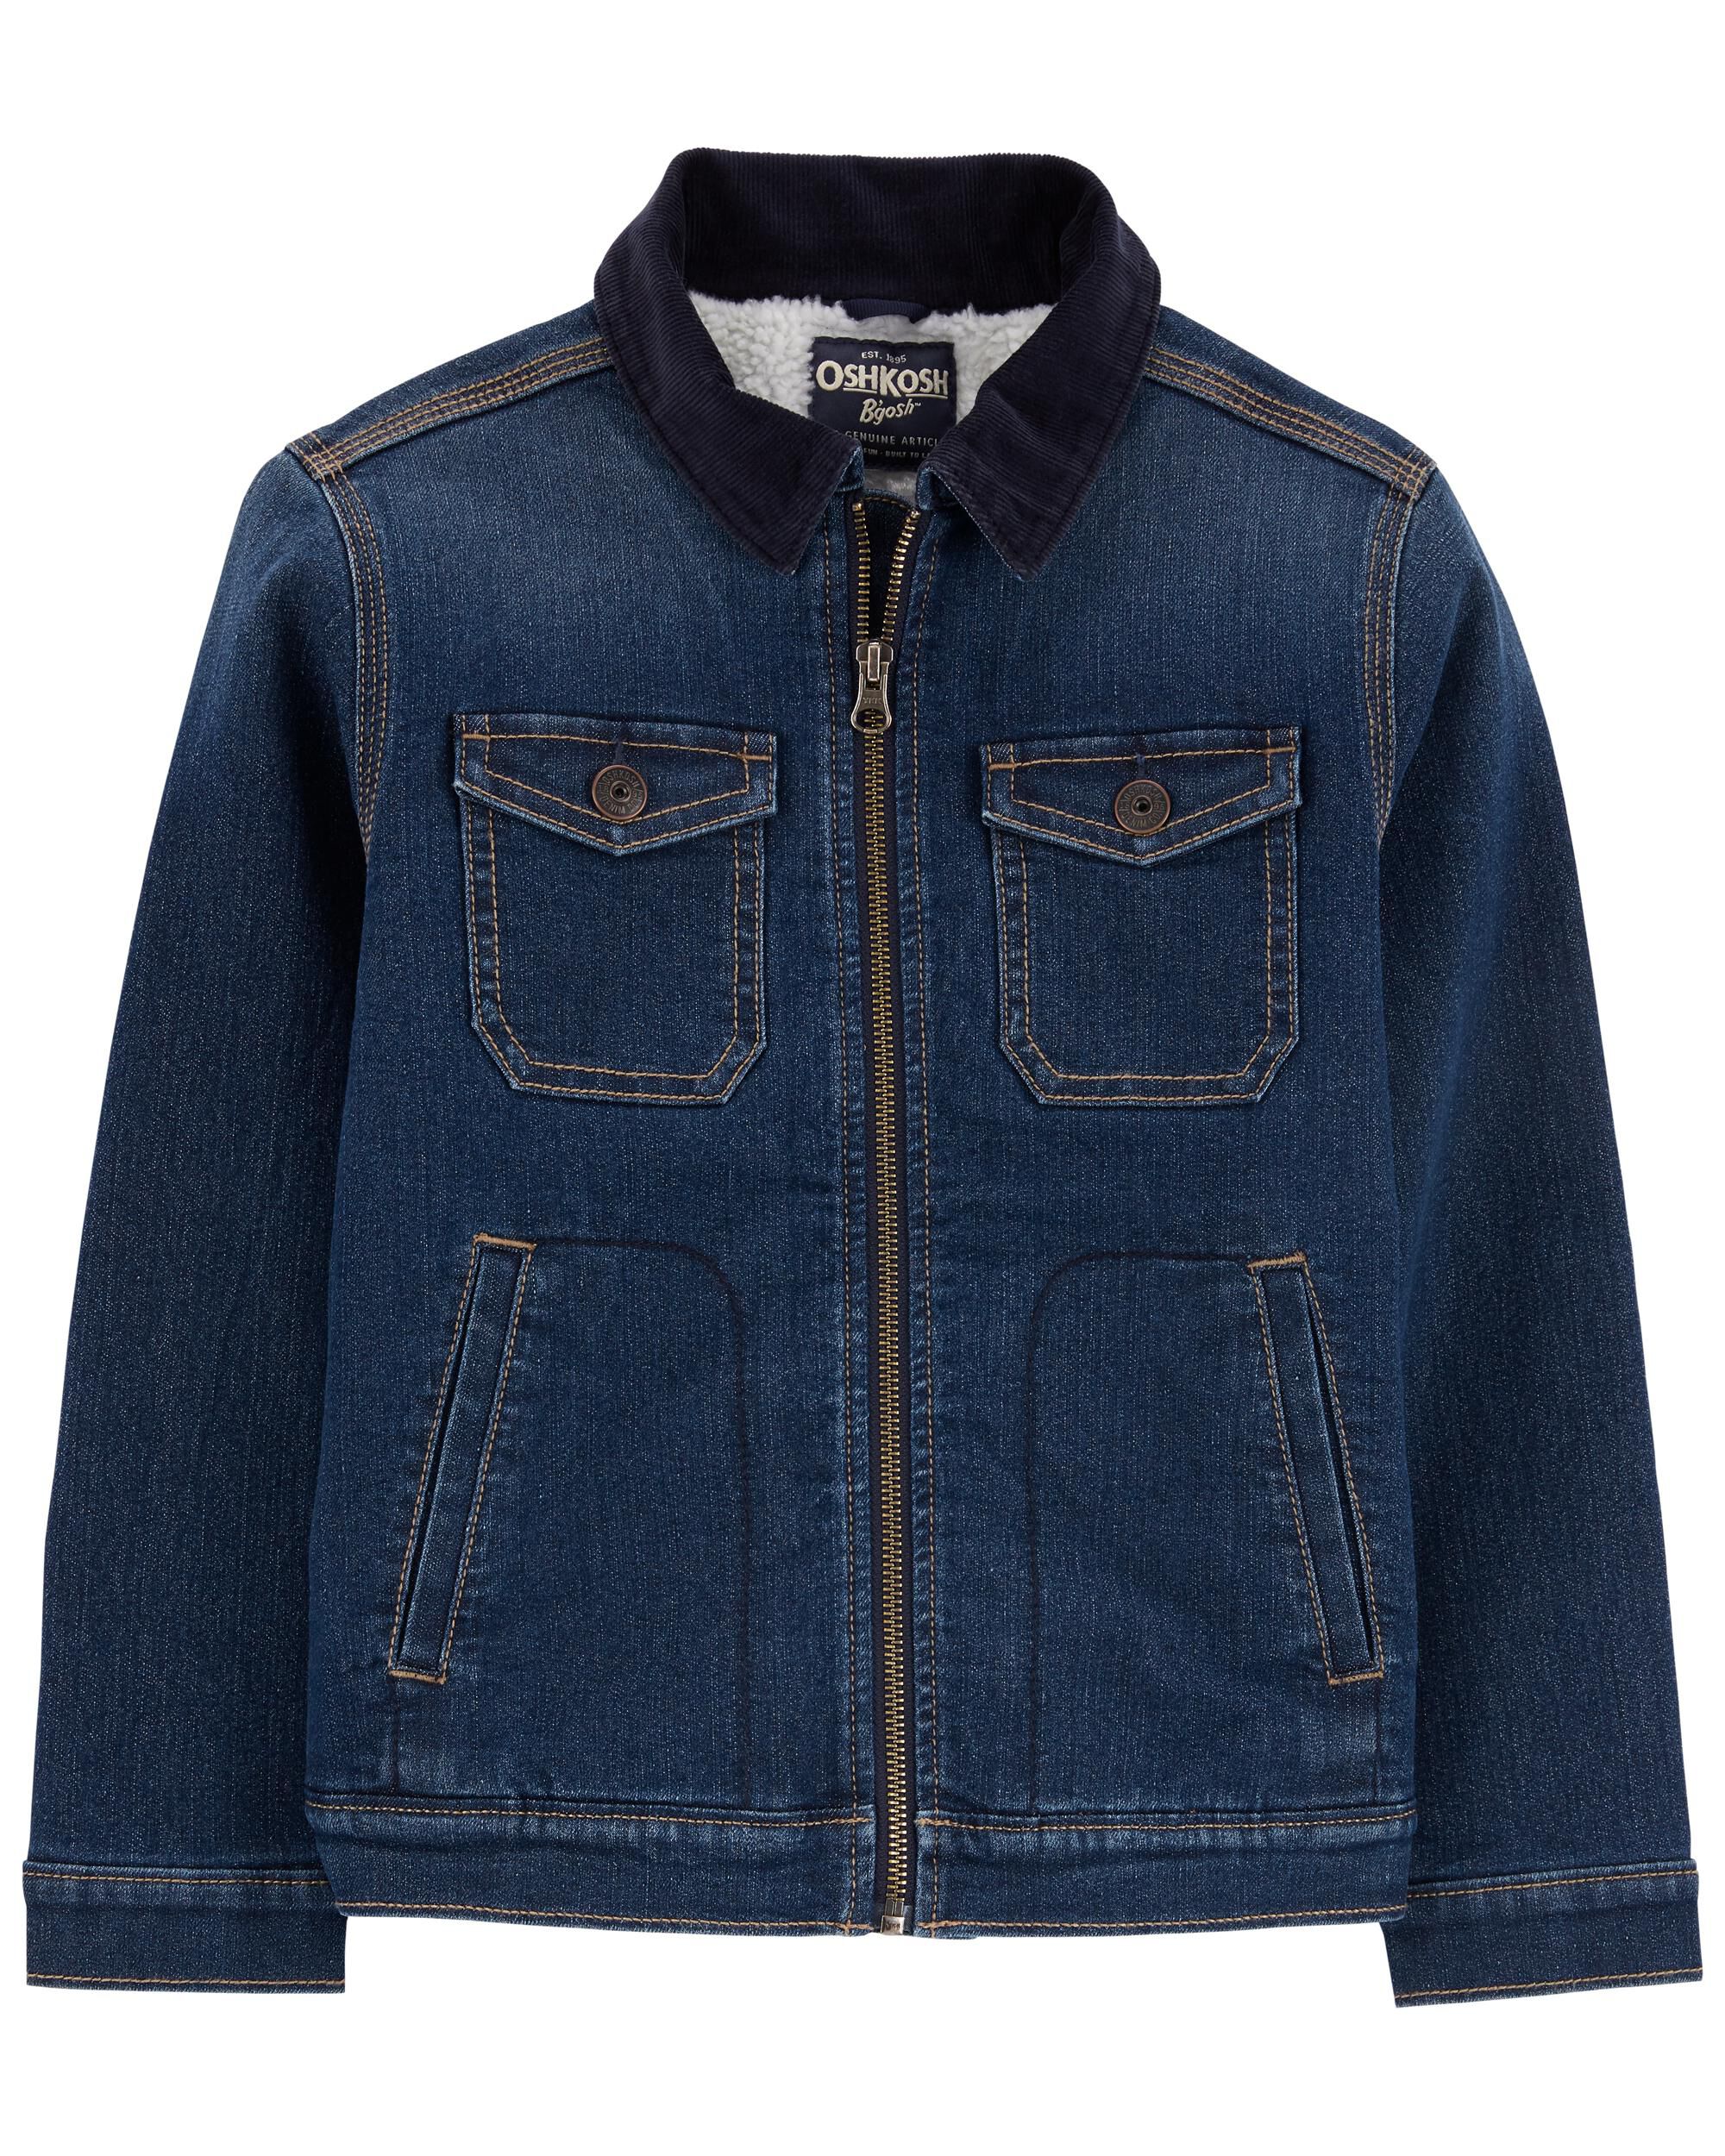 toddler sherpa lined denim jacket